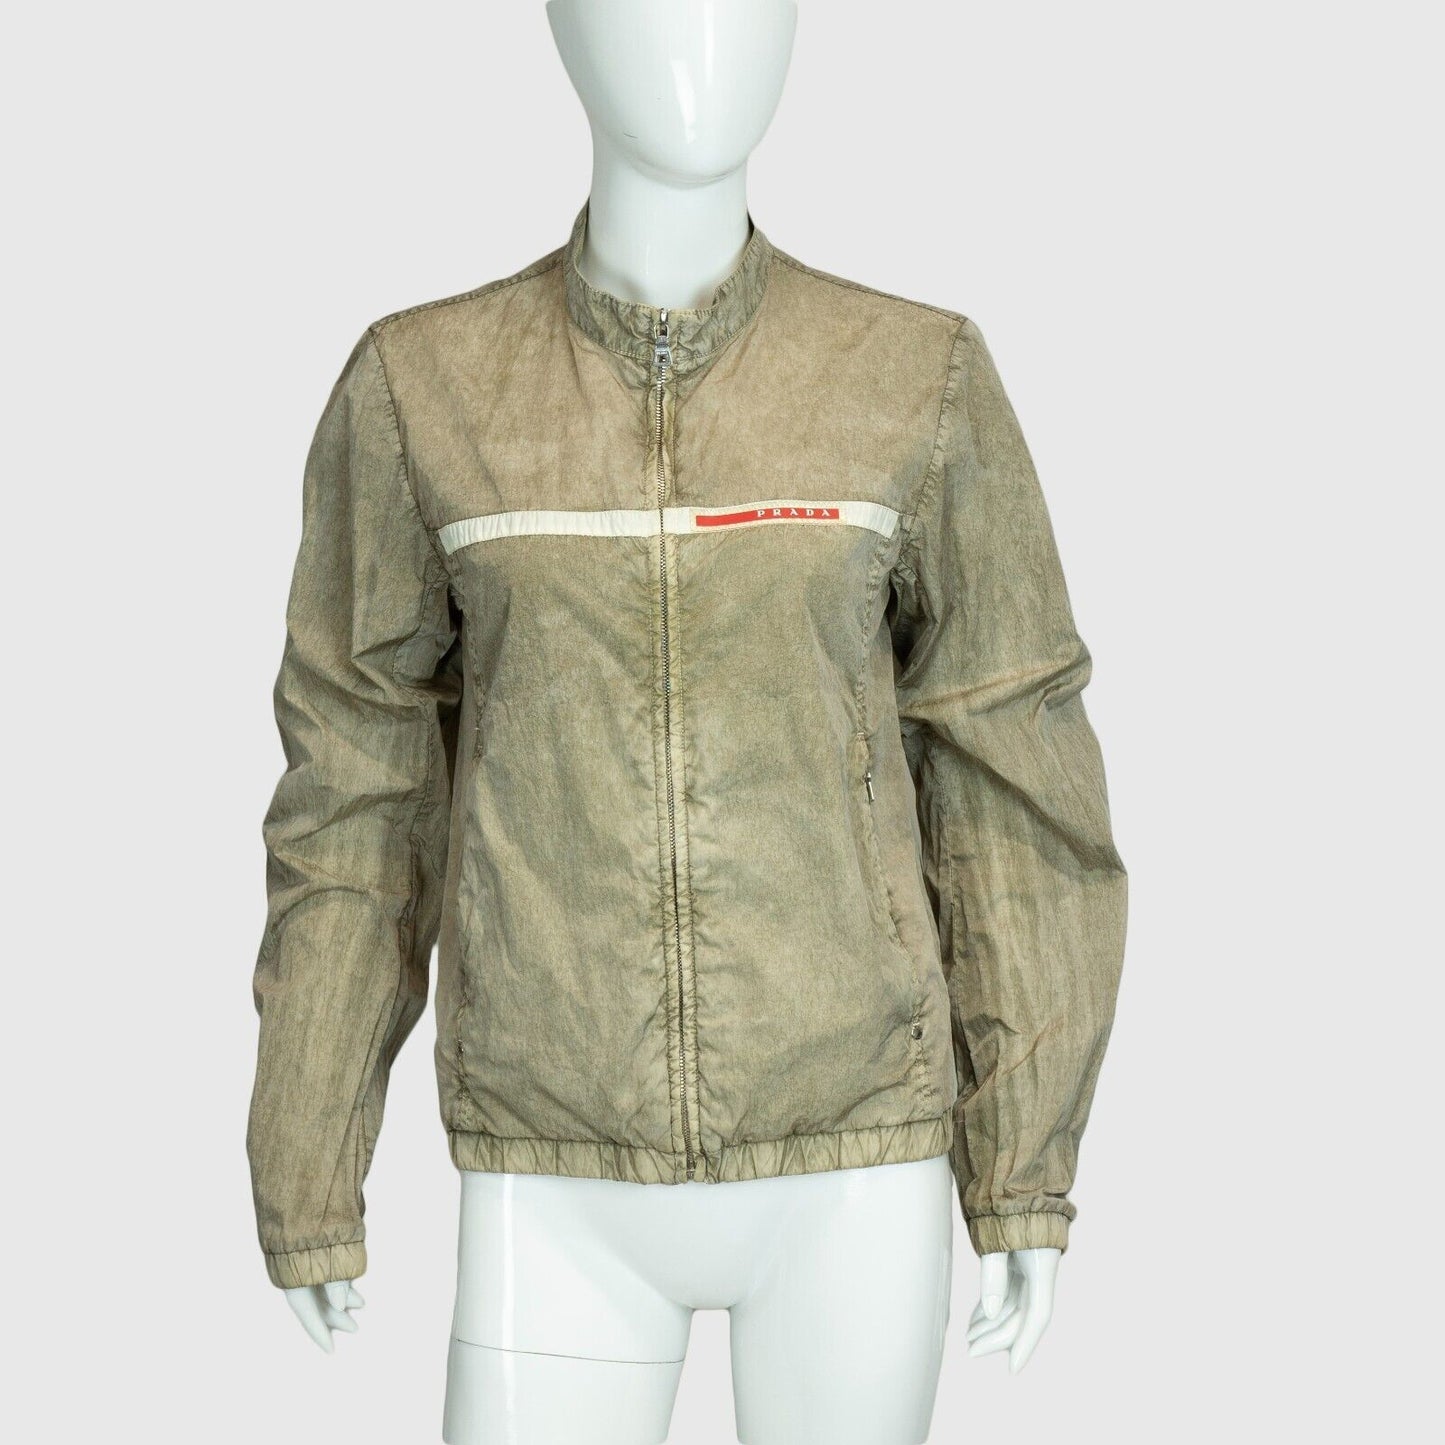 PRADA Sport Gray Nylon Jacket Art SGV782 Vintage 90s 00s